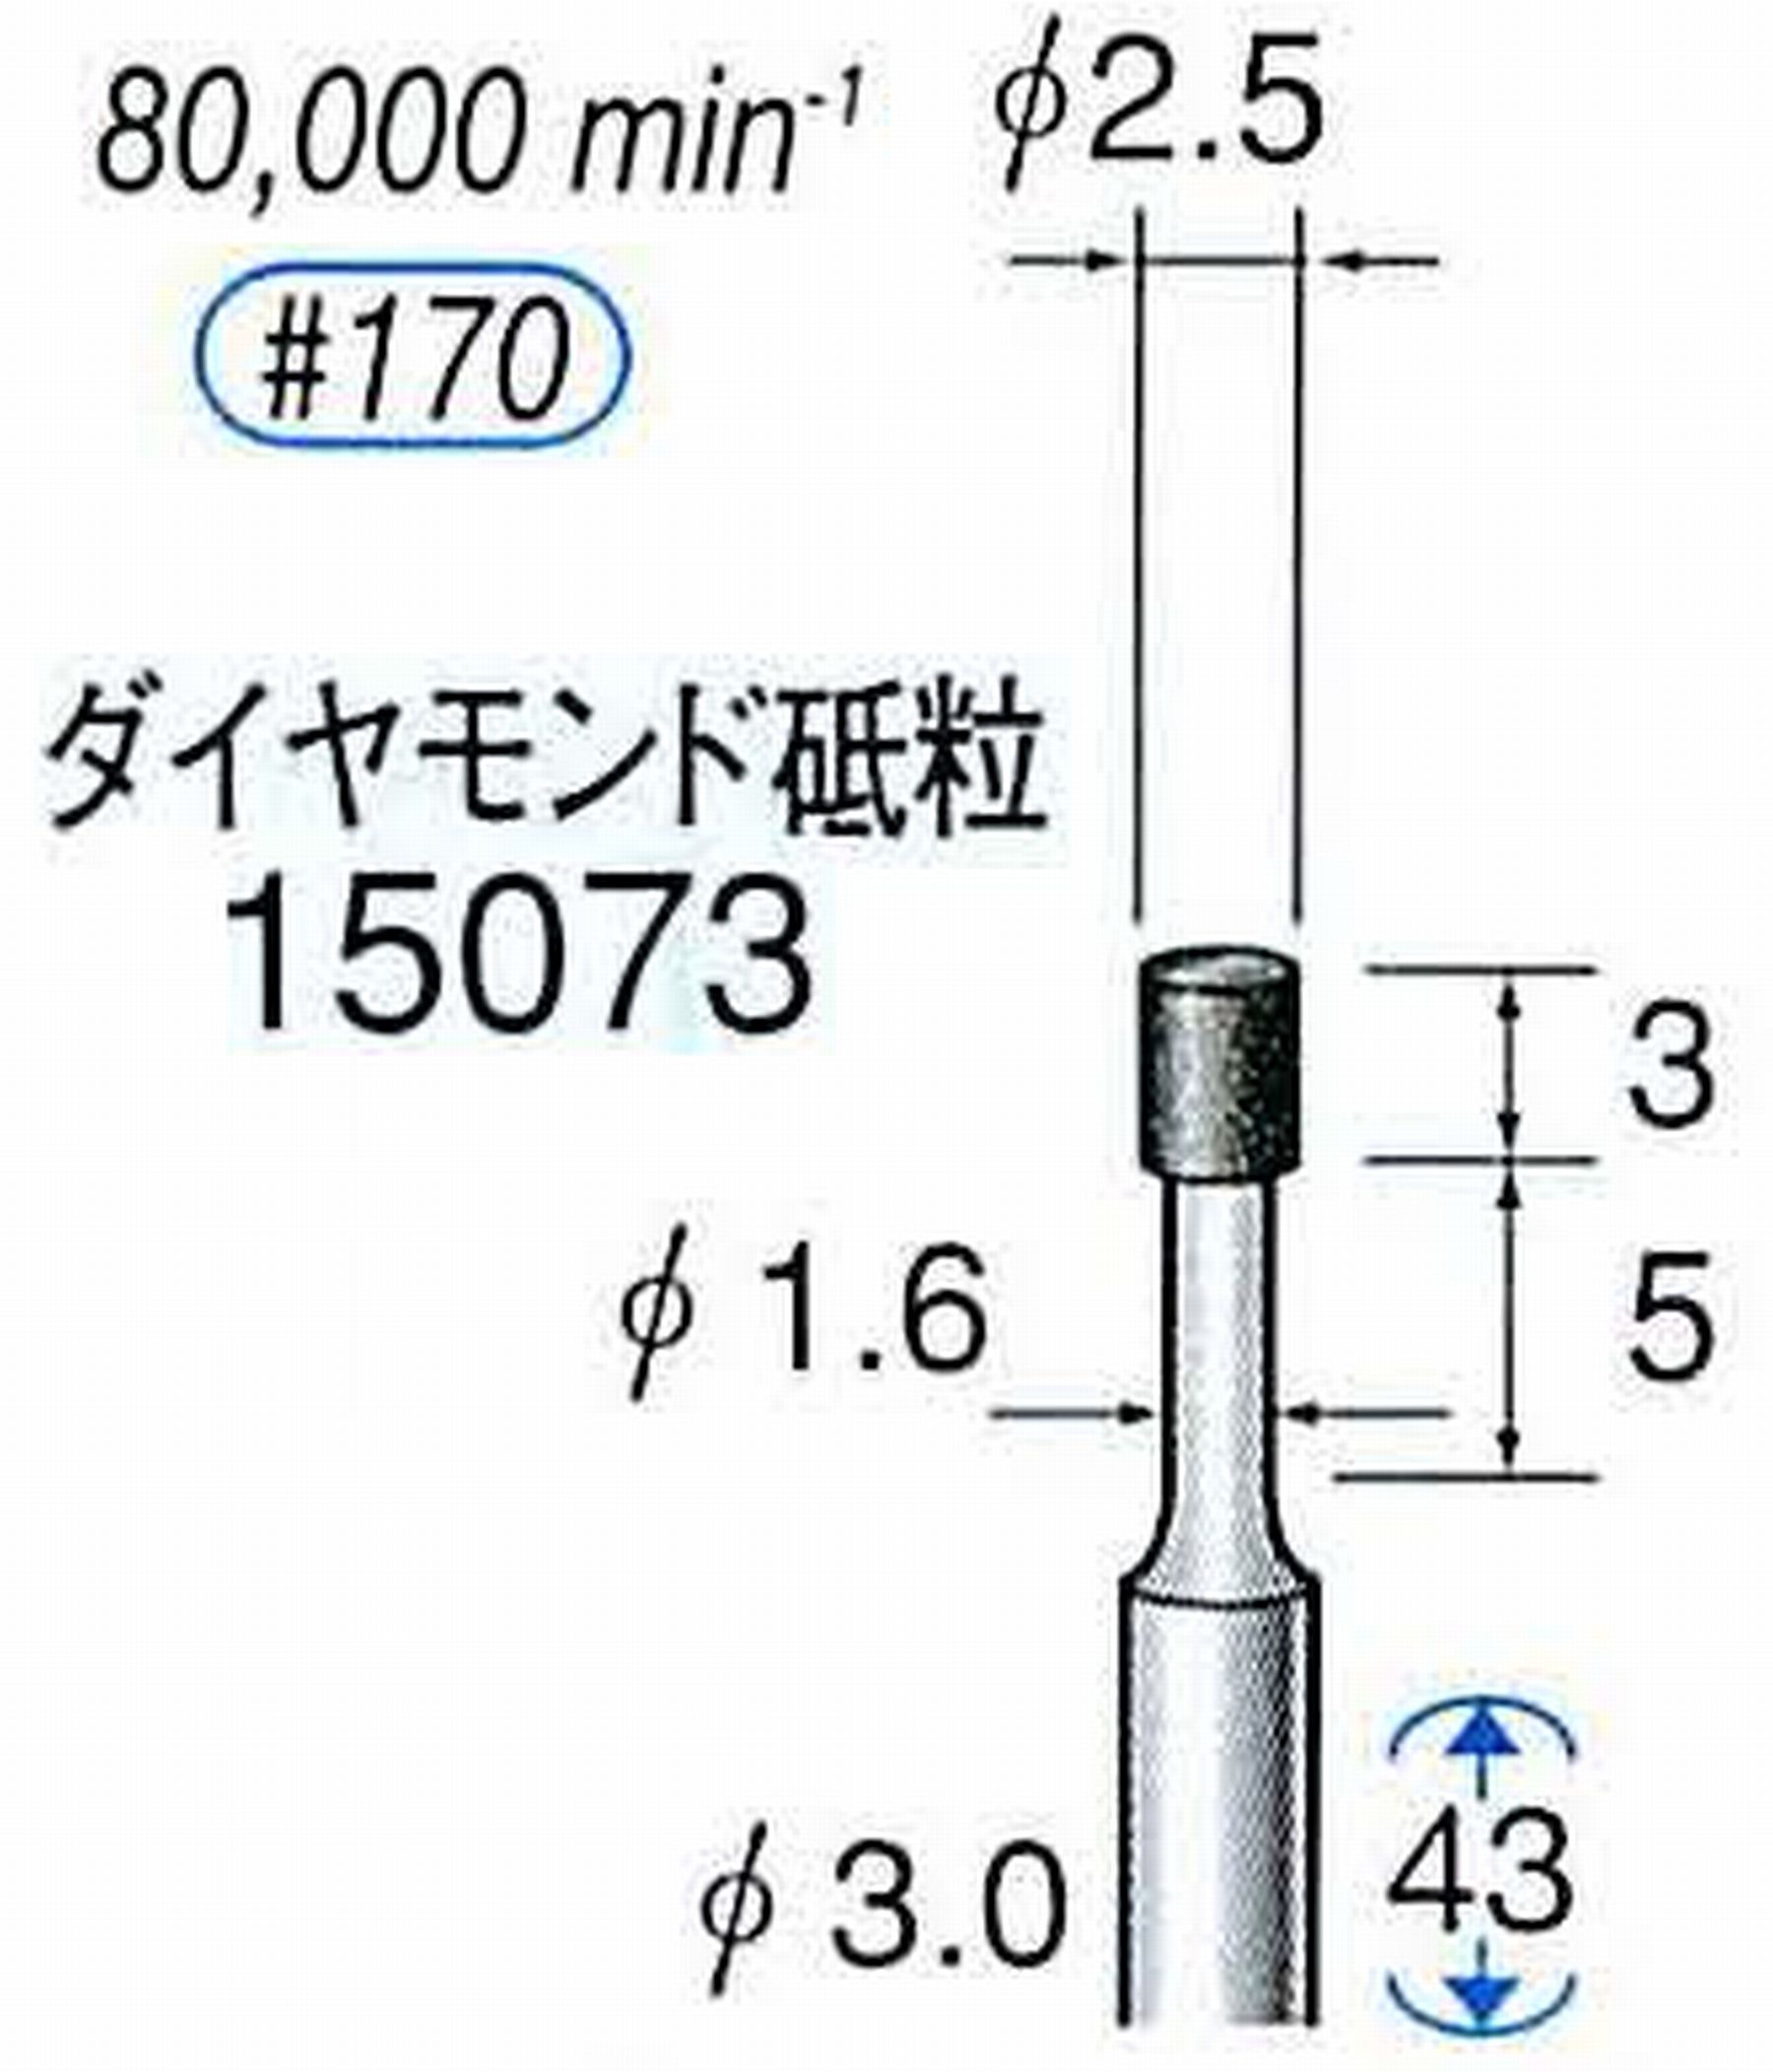 ナカニシ/NAKANISHI レジノイドダイヤモンド ダイヤモンド砥粒 軸径(シャンク)φ3.0mm 15073